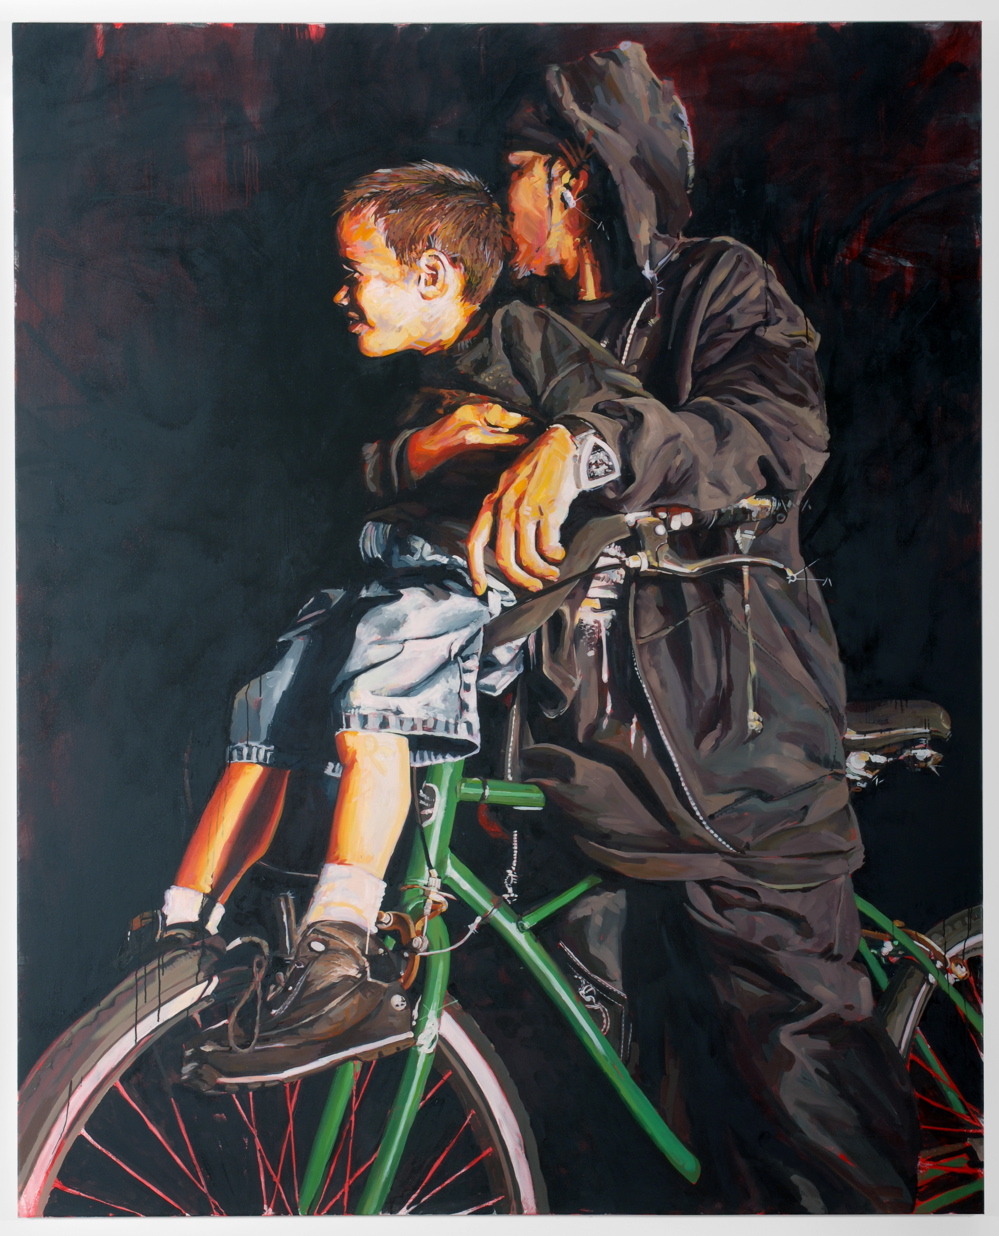   MICHAEL VASQUEZ    "The Neighborhood Tour" 2007    acrylic, oil, and spray paint on canvas    96 x 78"  